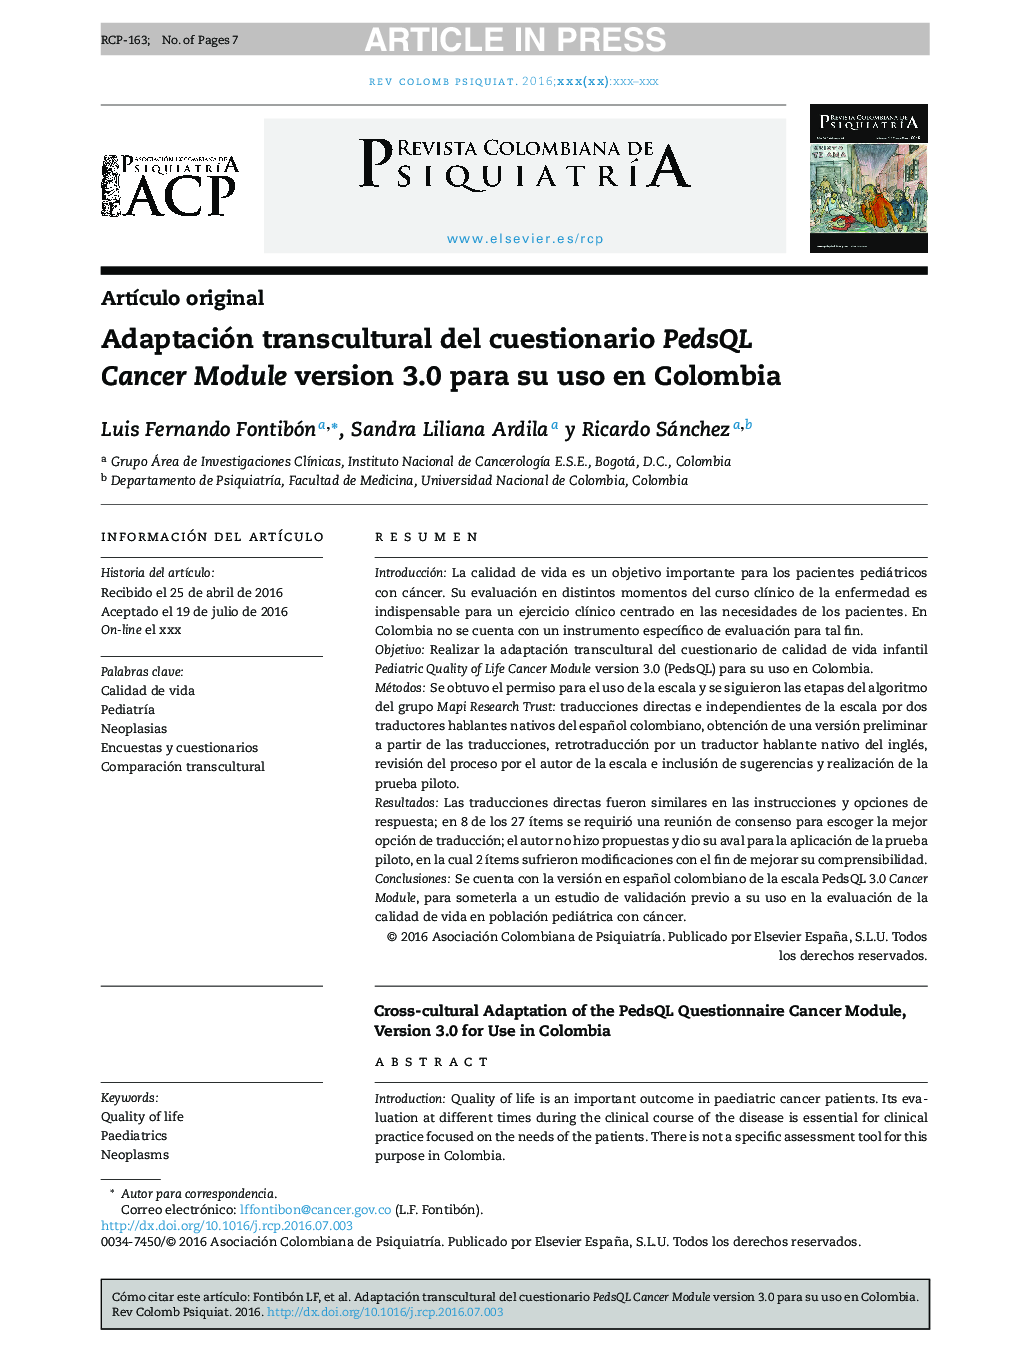 Adaptación transcultural del cuestionario PedsQL Cancer Module version 3.0 para su uso en Colombia